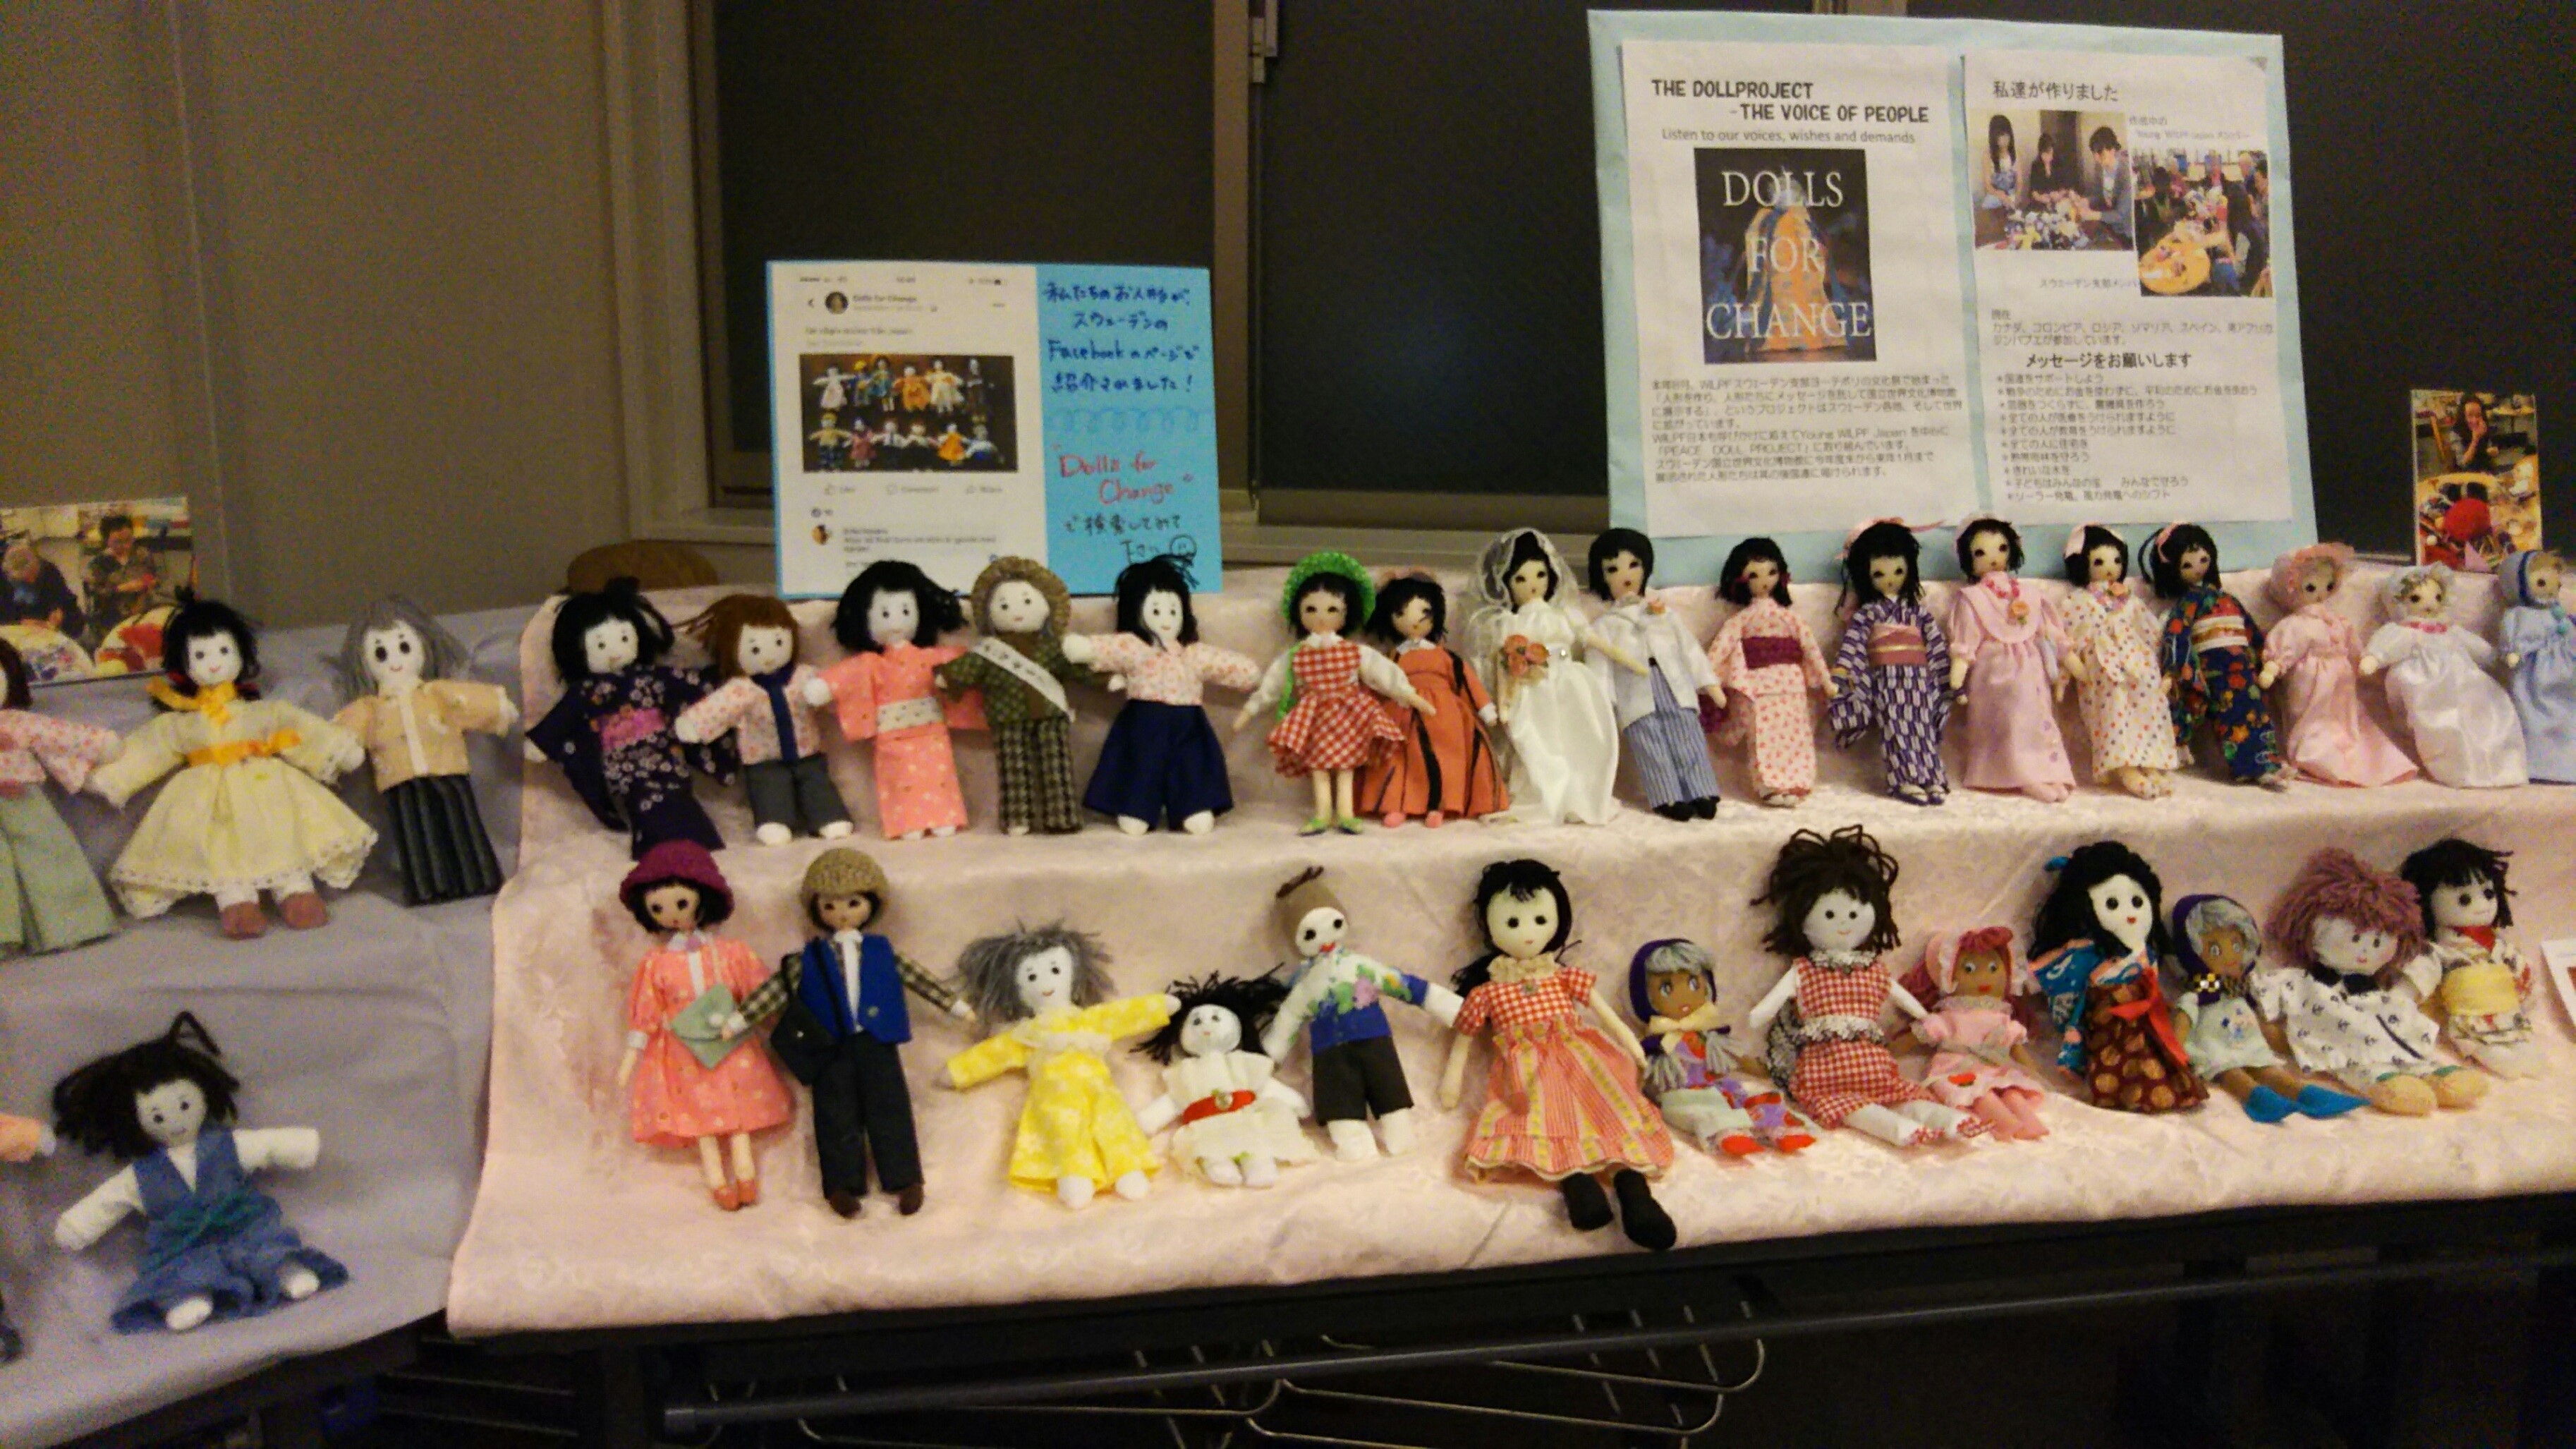 　スウェーデンへの旅立ち前に
　　　　　目白祭で展示された人形